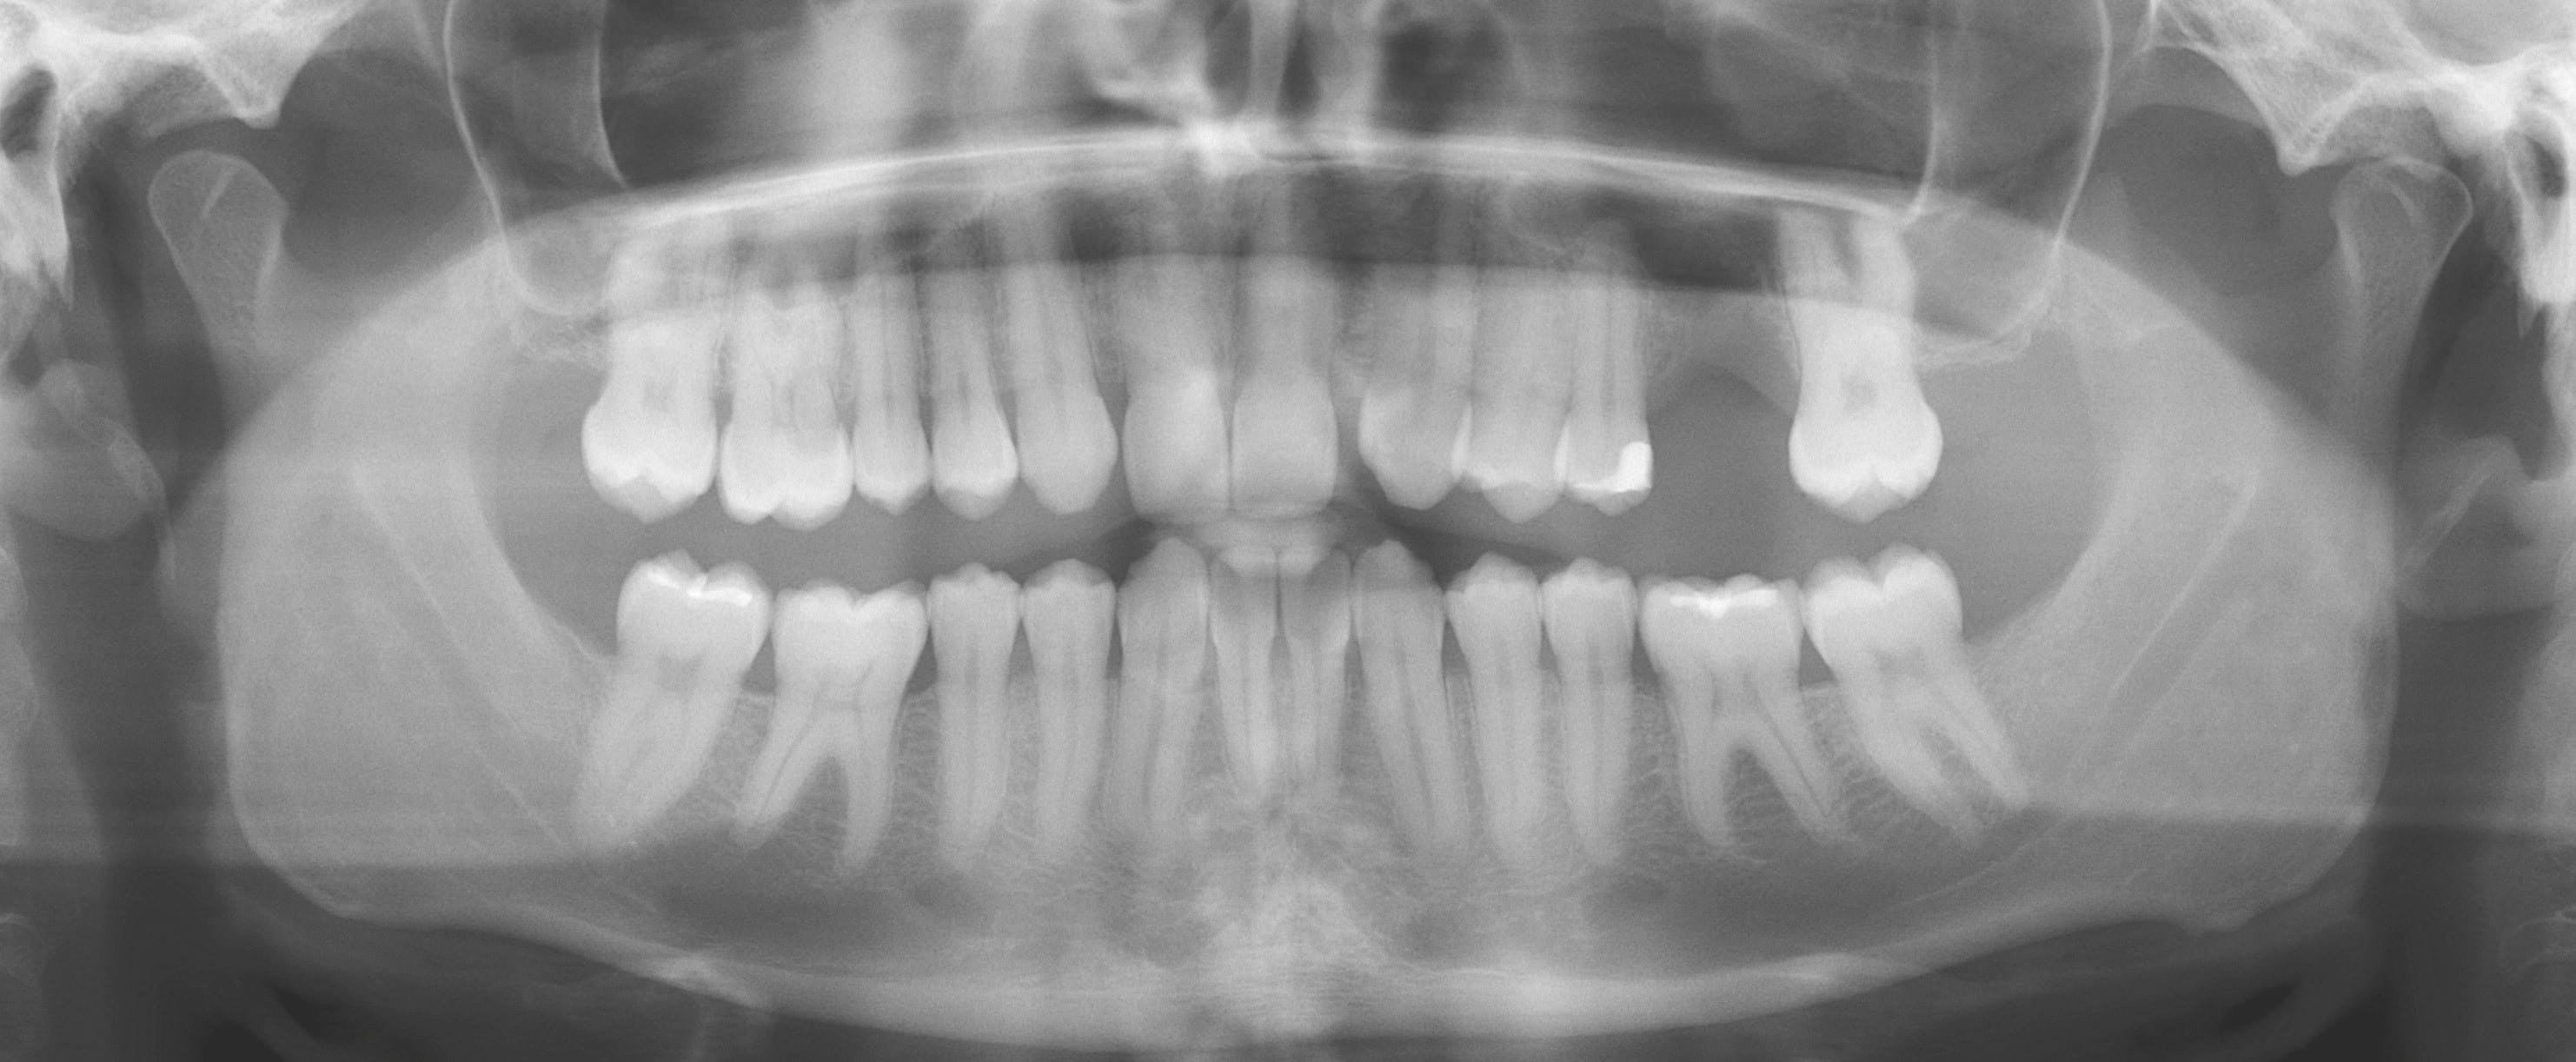 写真2： パノラマ画像は上顎左側臼歯部に1歯欠損があること示す